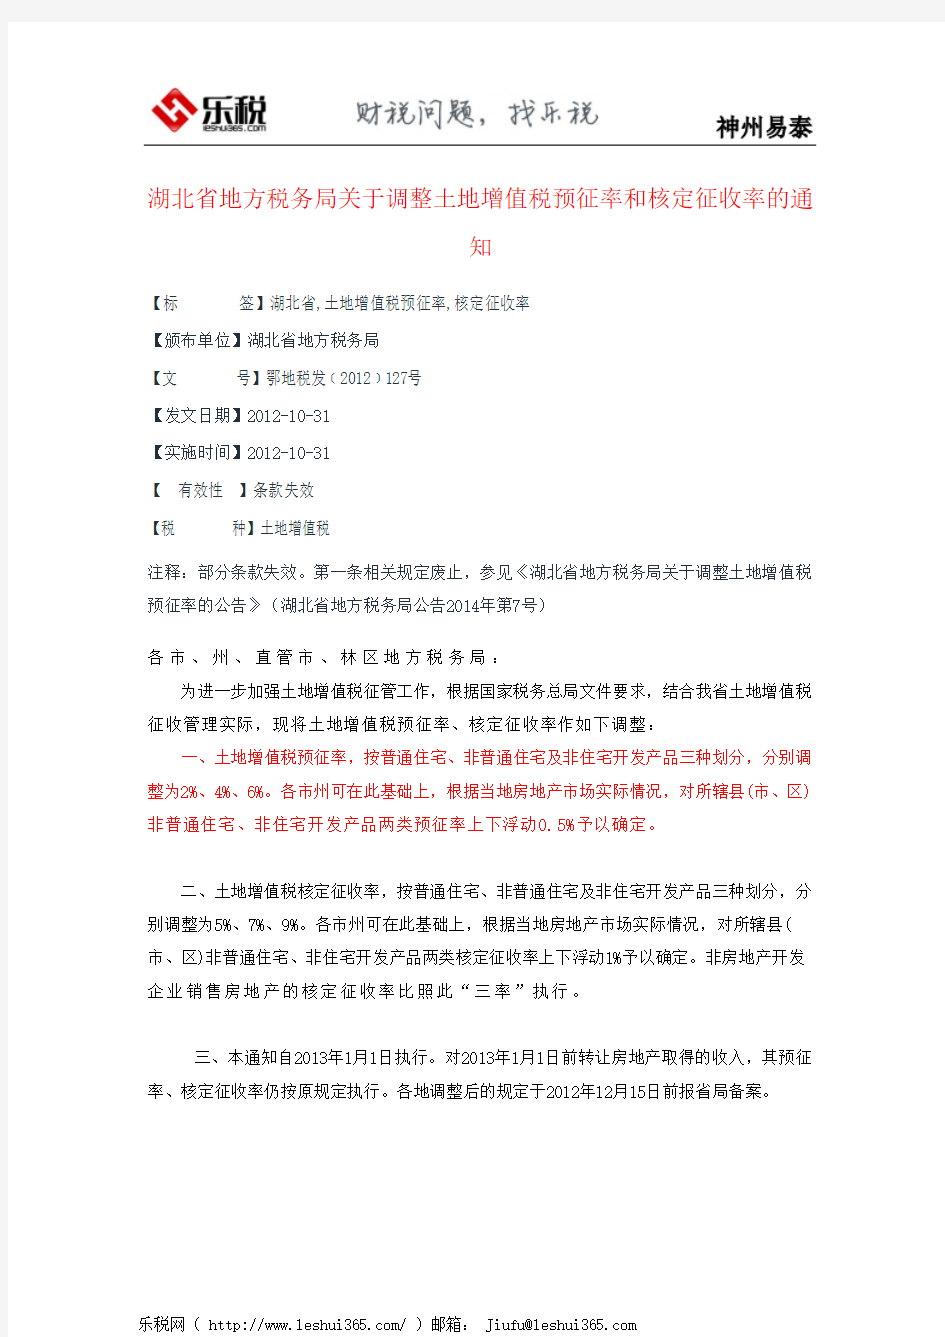 湖北省地方税务局关于调整土地增值税预征率和核定征收率的通知